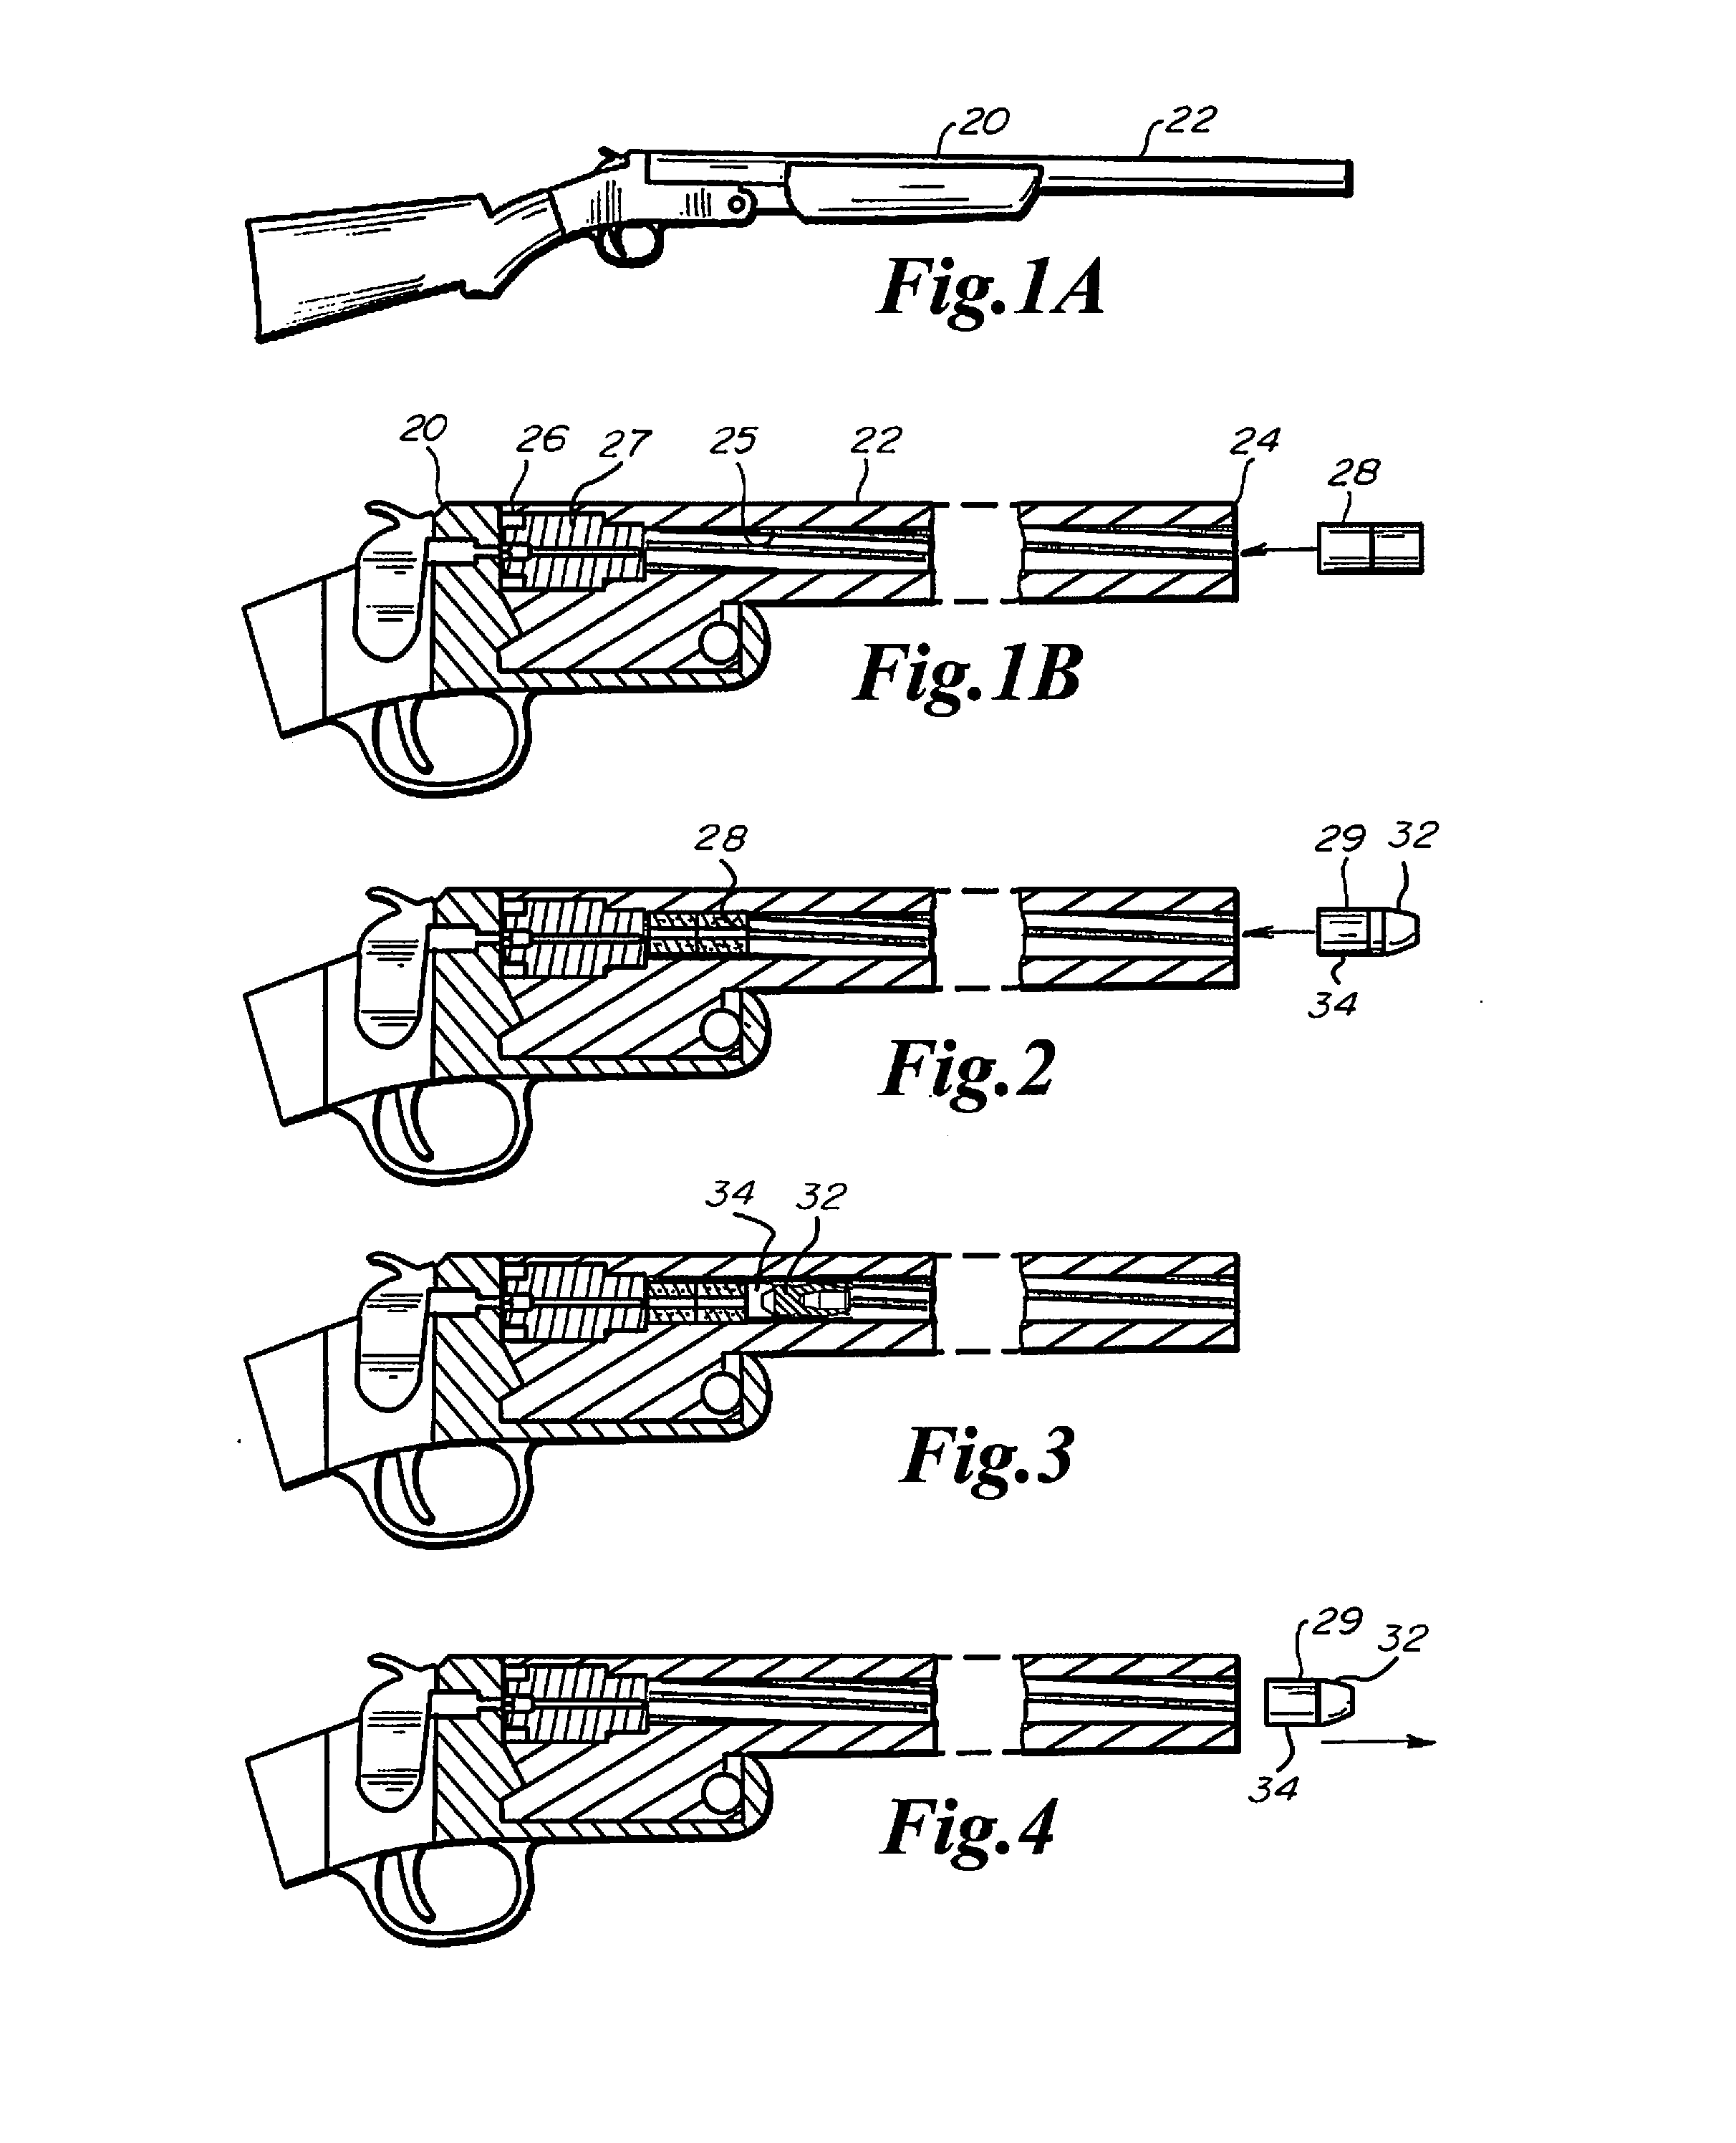 Muzzleloader bullet system